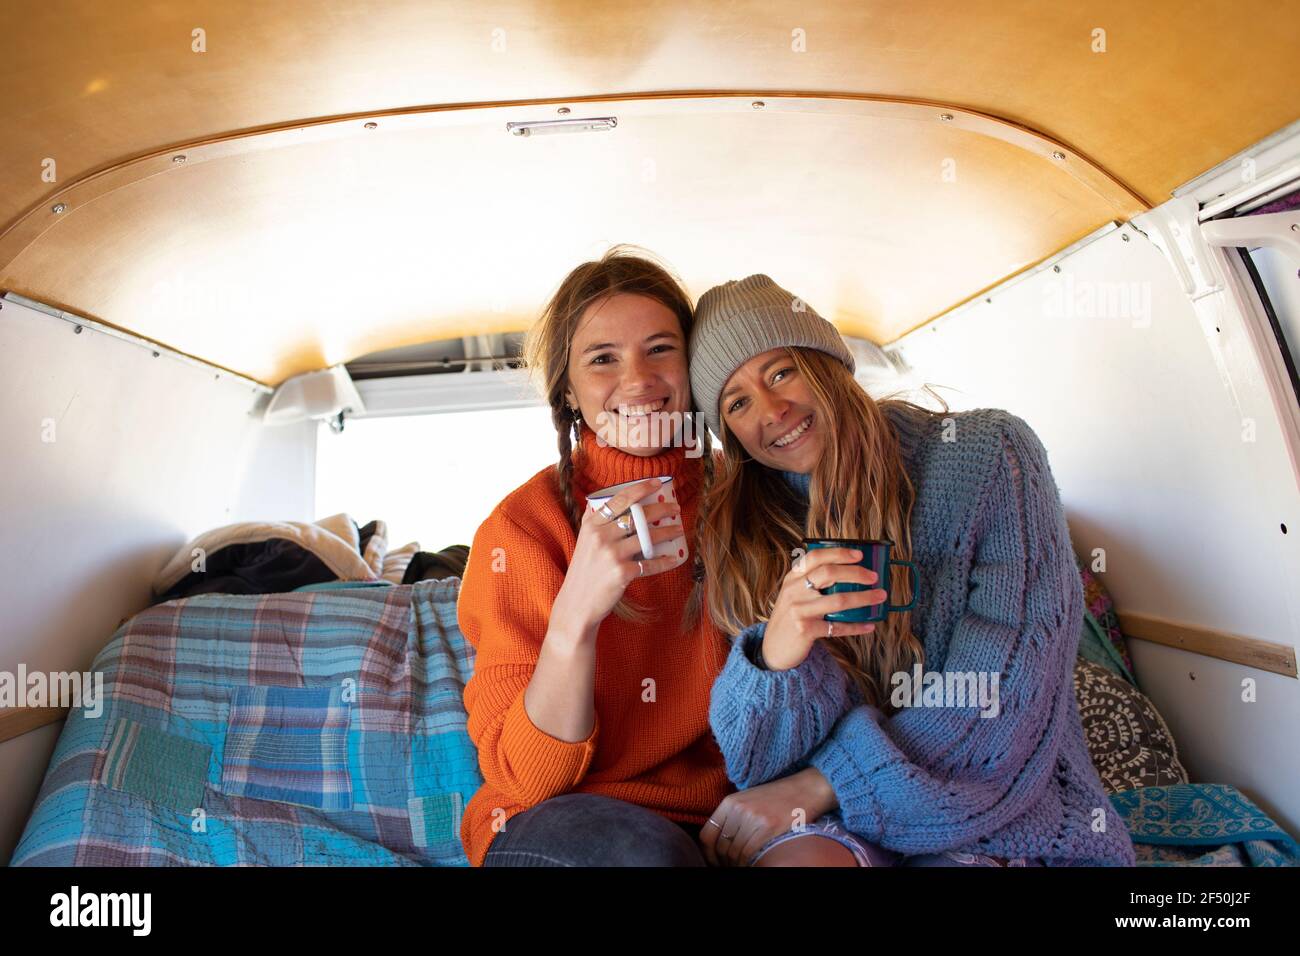 Portrait happy young women friends drinking tea in camper van Stock Photo